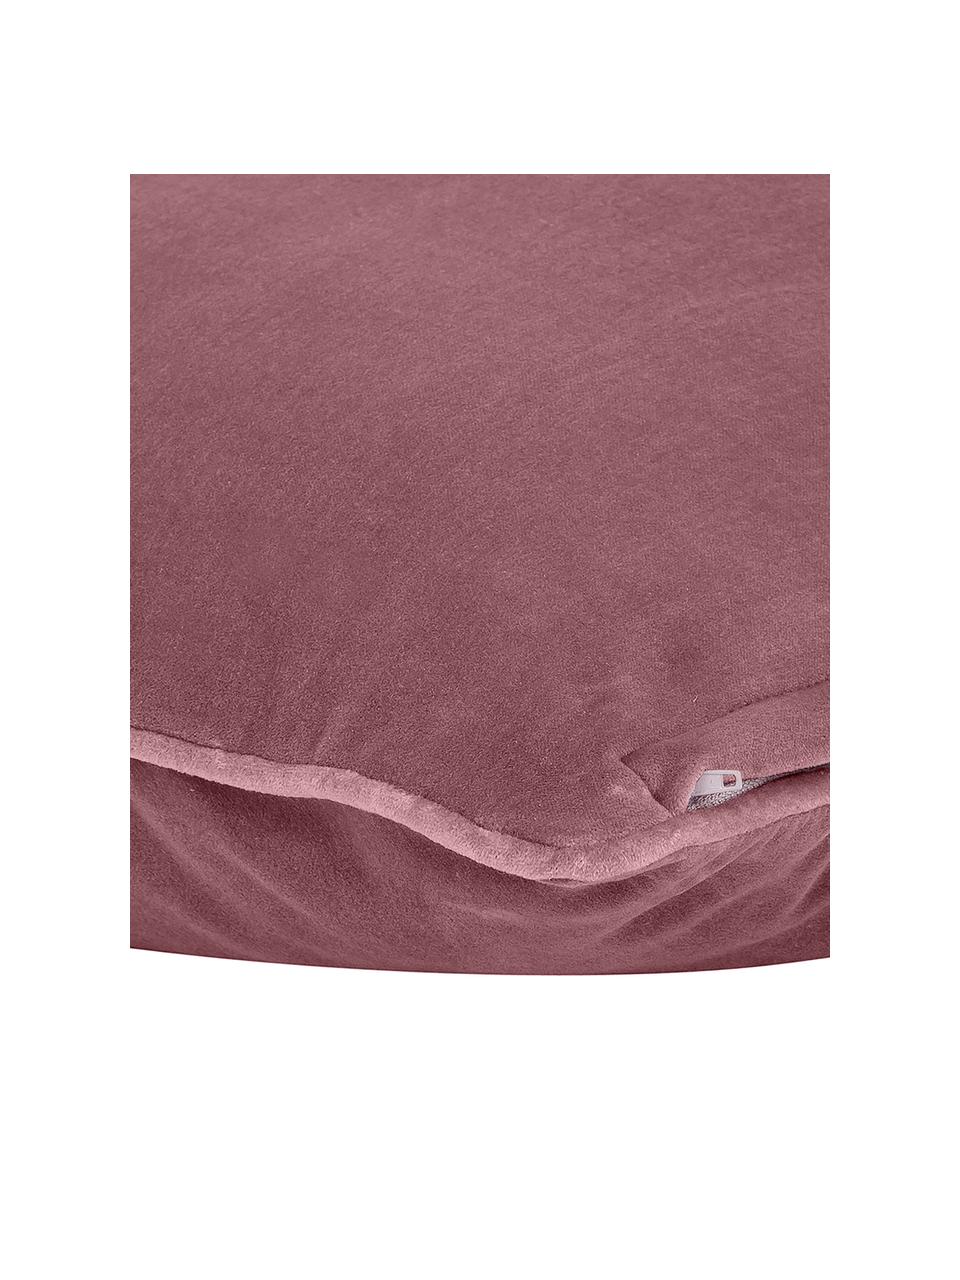 Copricuscino in velluto Dana, 100% velluto di cotone, Rosa antico, Larg. 40 x Lung. 40 cm